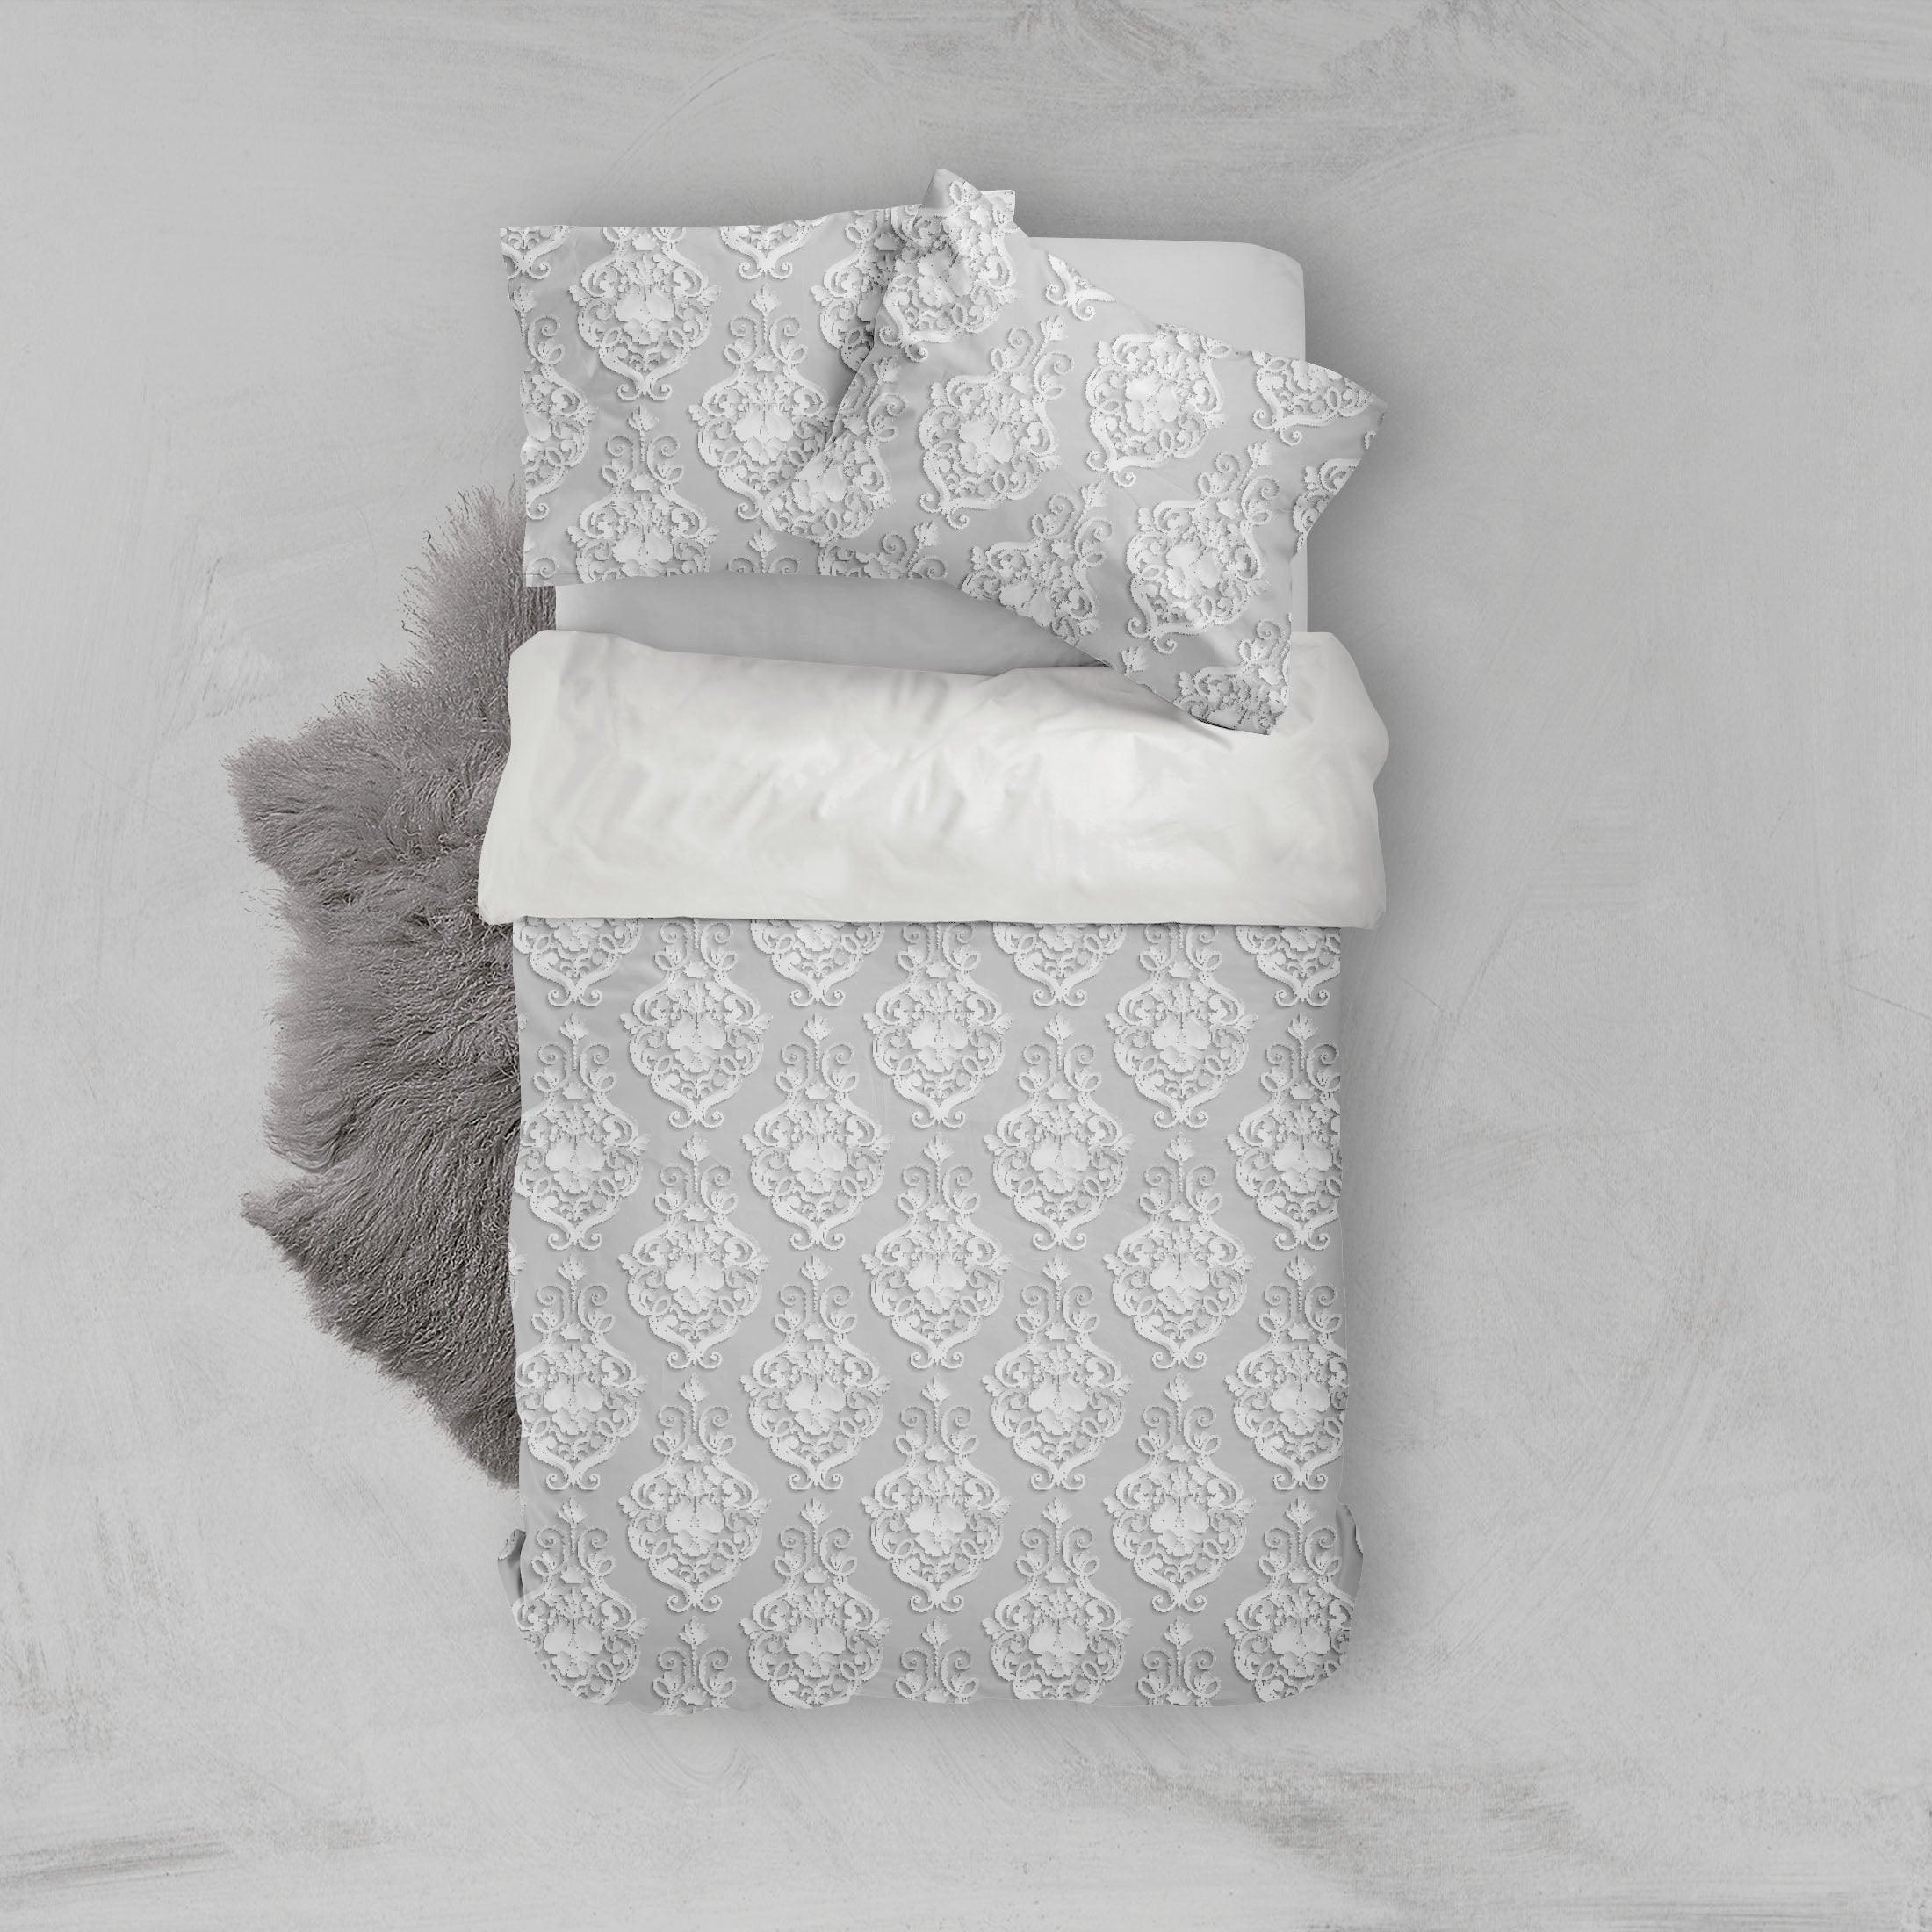 3D White Flowers Pattern Quilt Cover Set Bedding Set Pillowcases  94- Jess Art Decoration